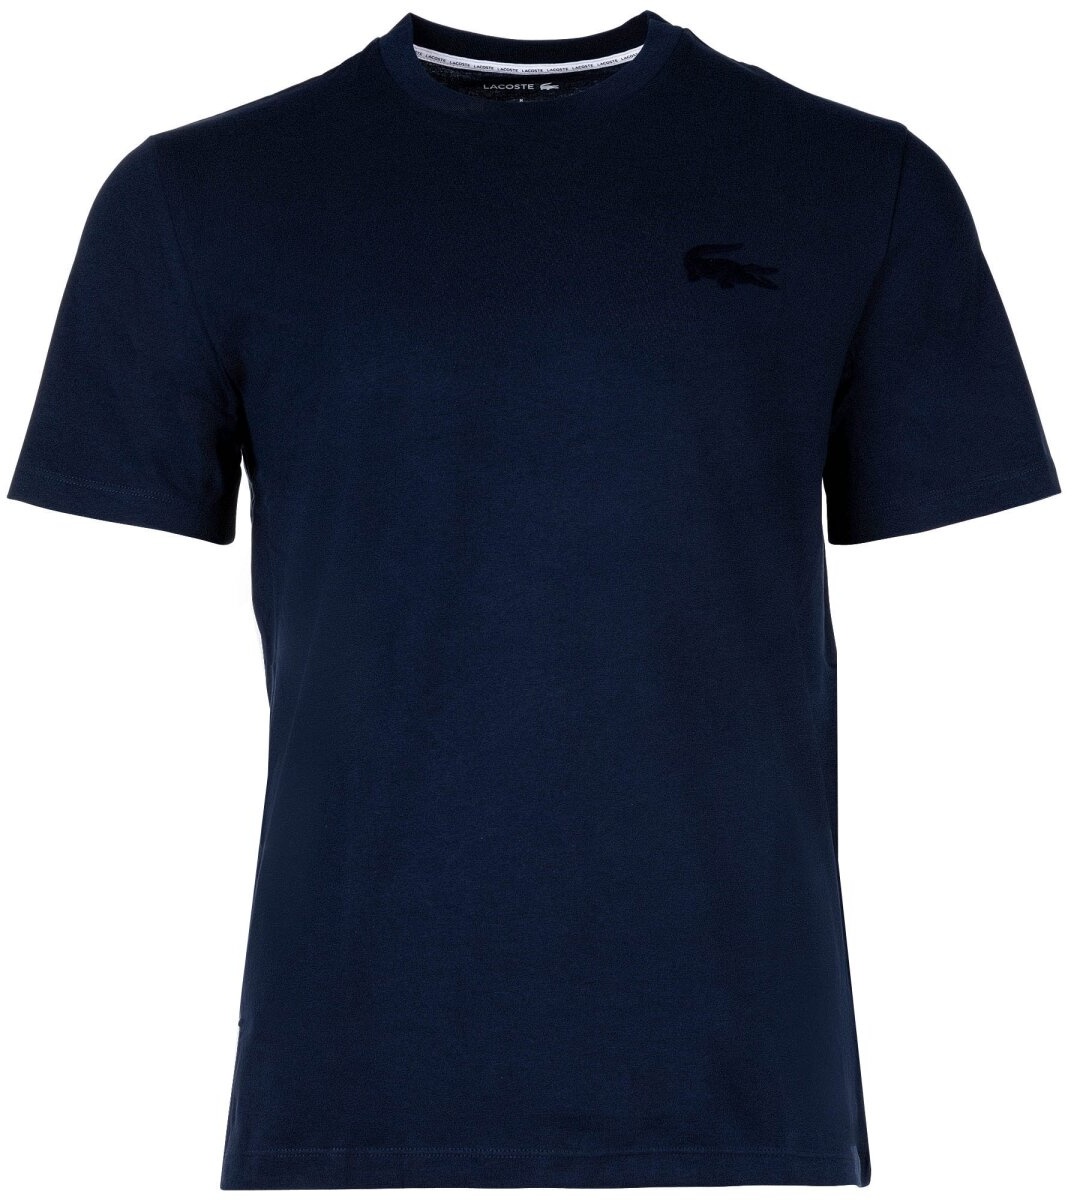 LACOSTE Herren T-Shirt - Loungewear, Basic, Rundhals, Baumwolle Marine L